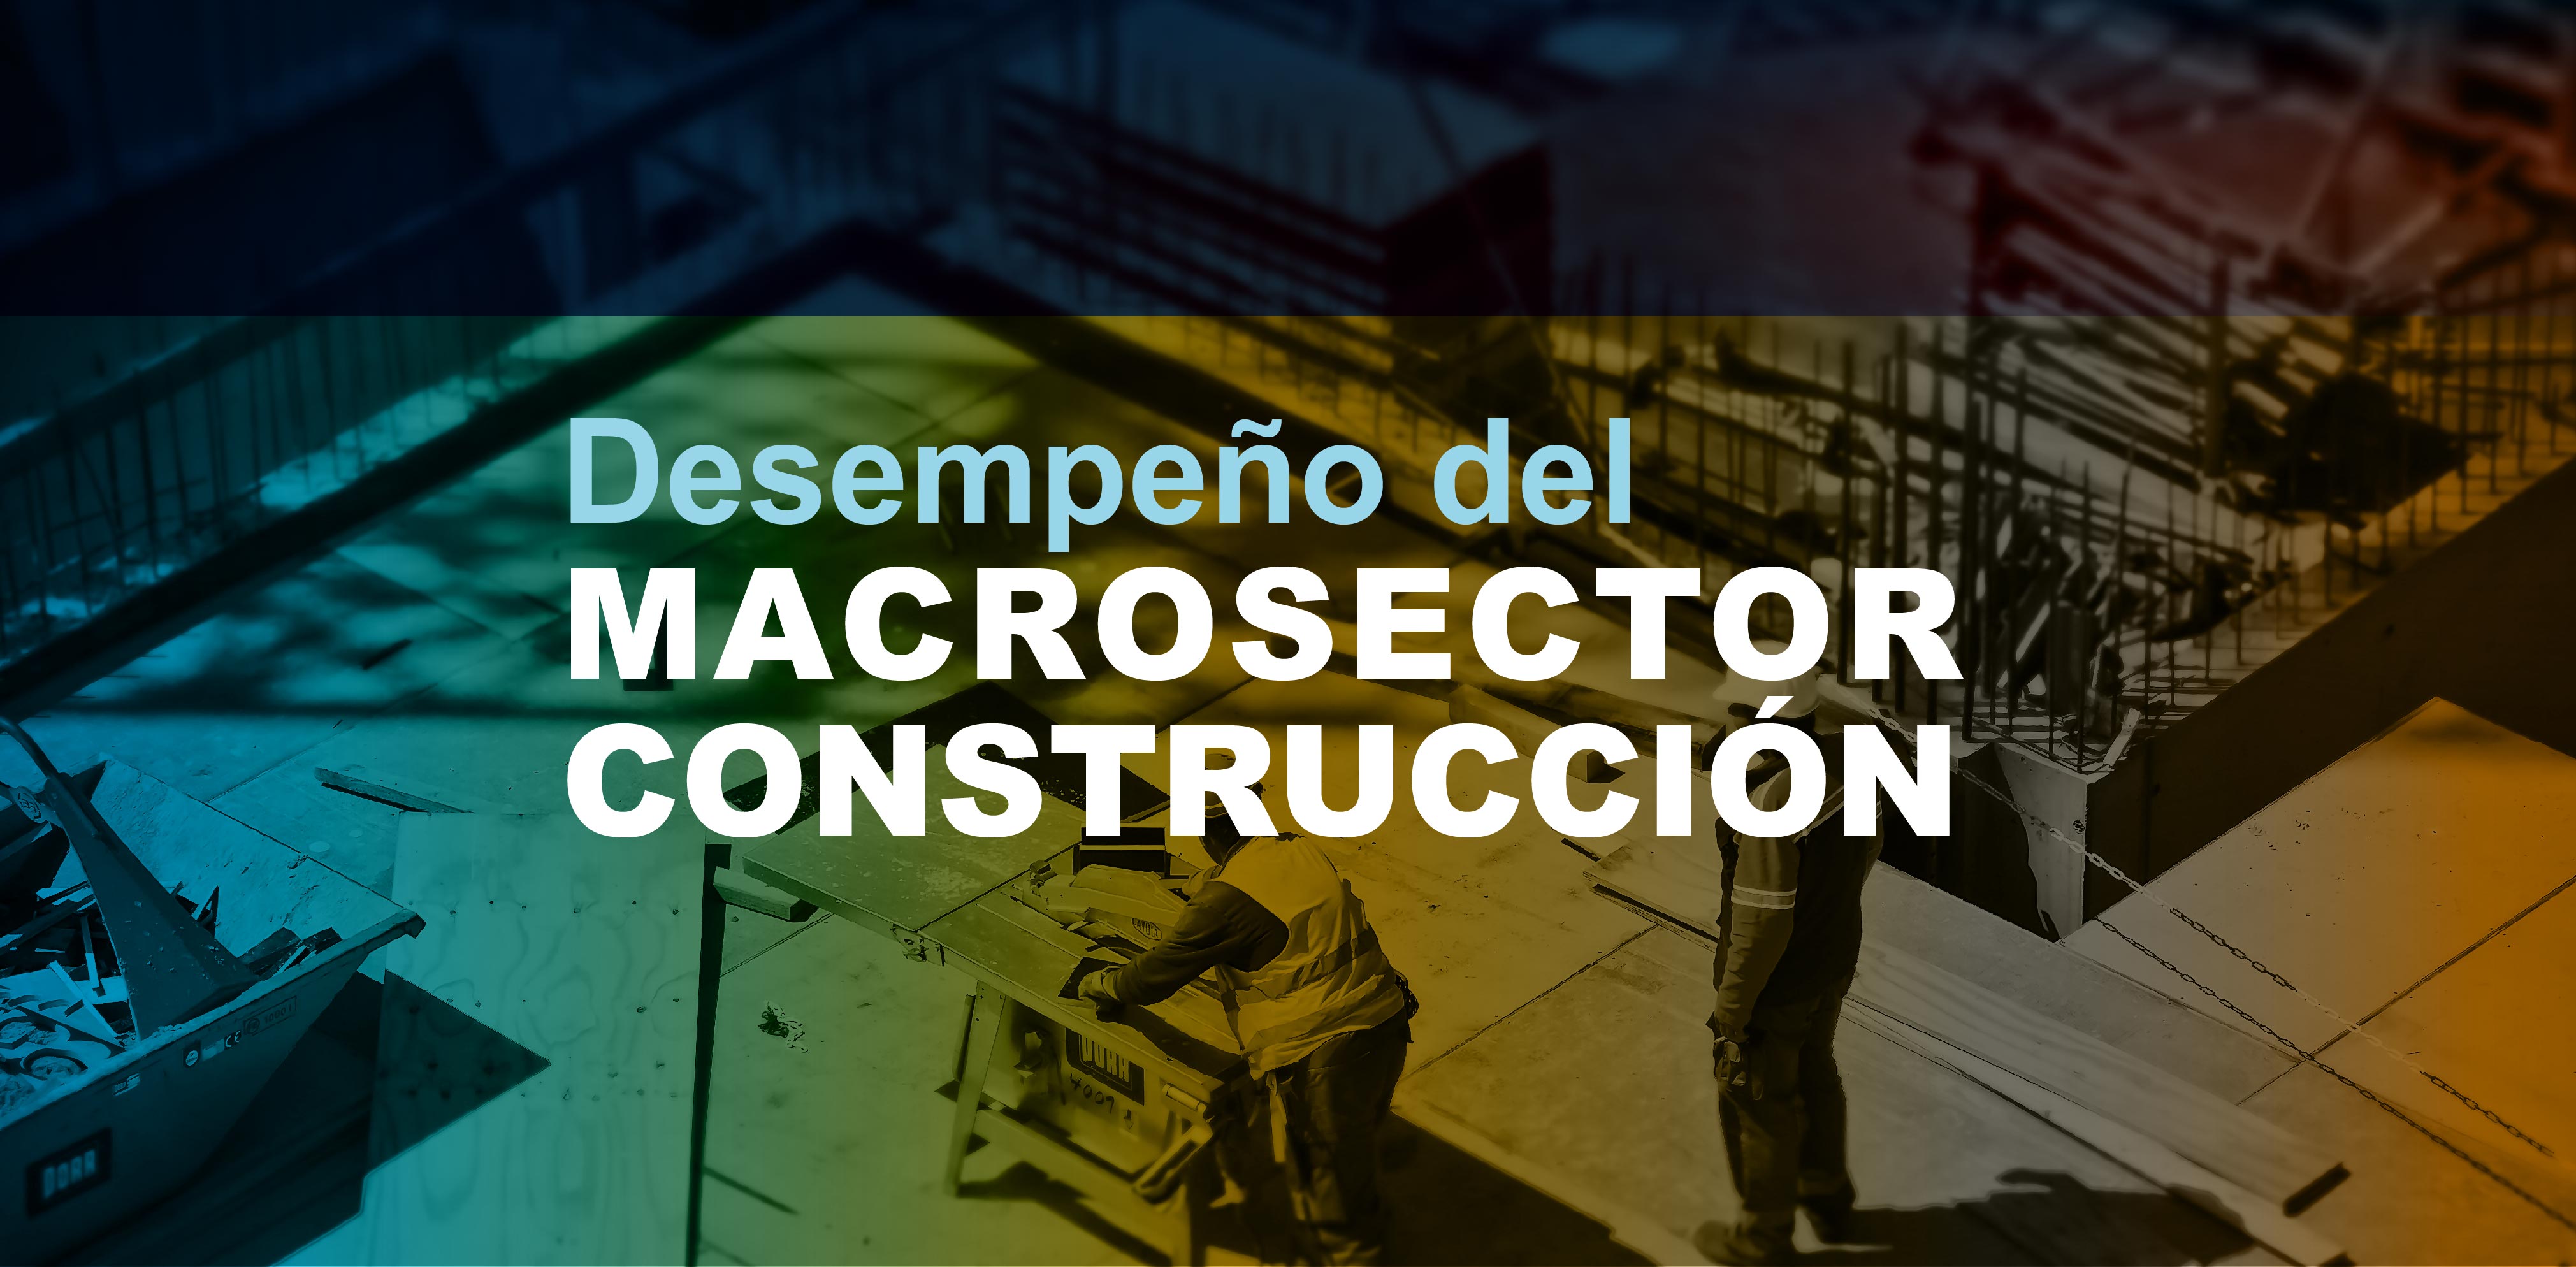 En el presente informe se analizan los principales resultados financieros de las empresas del macrosector construcción, con corte al 31 de diciembre de 2018.